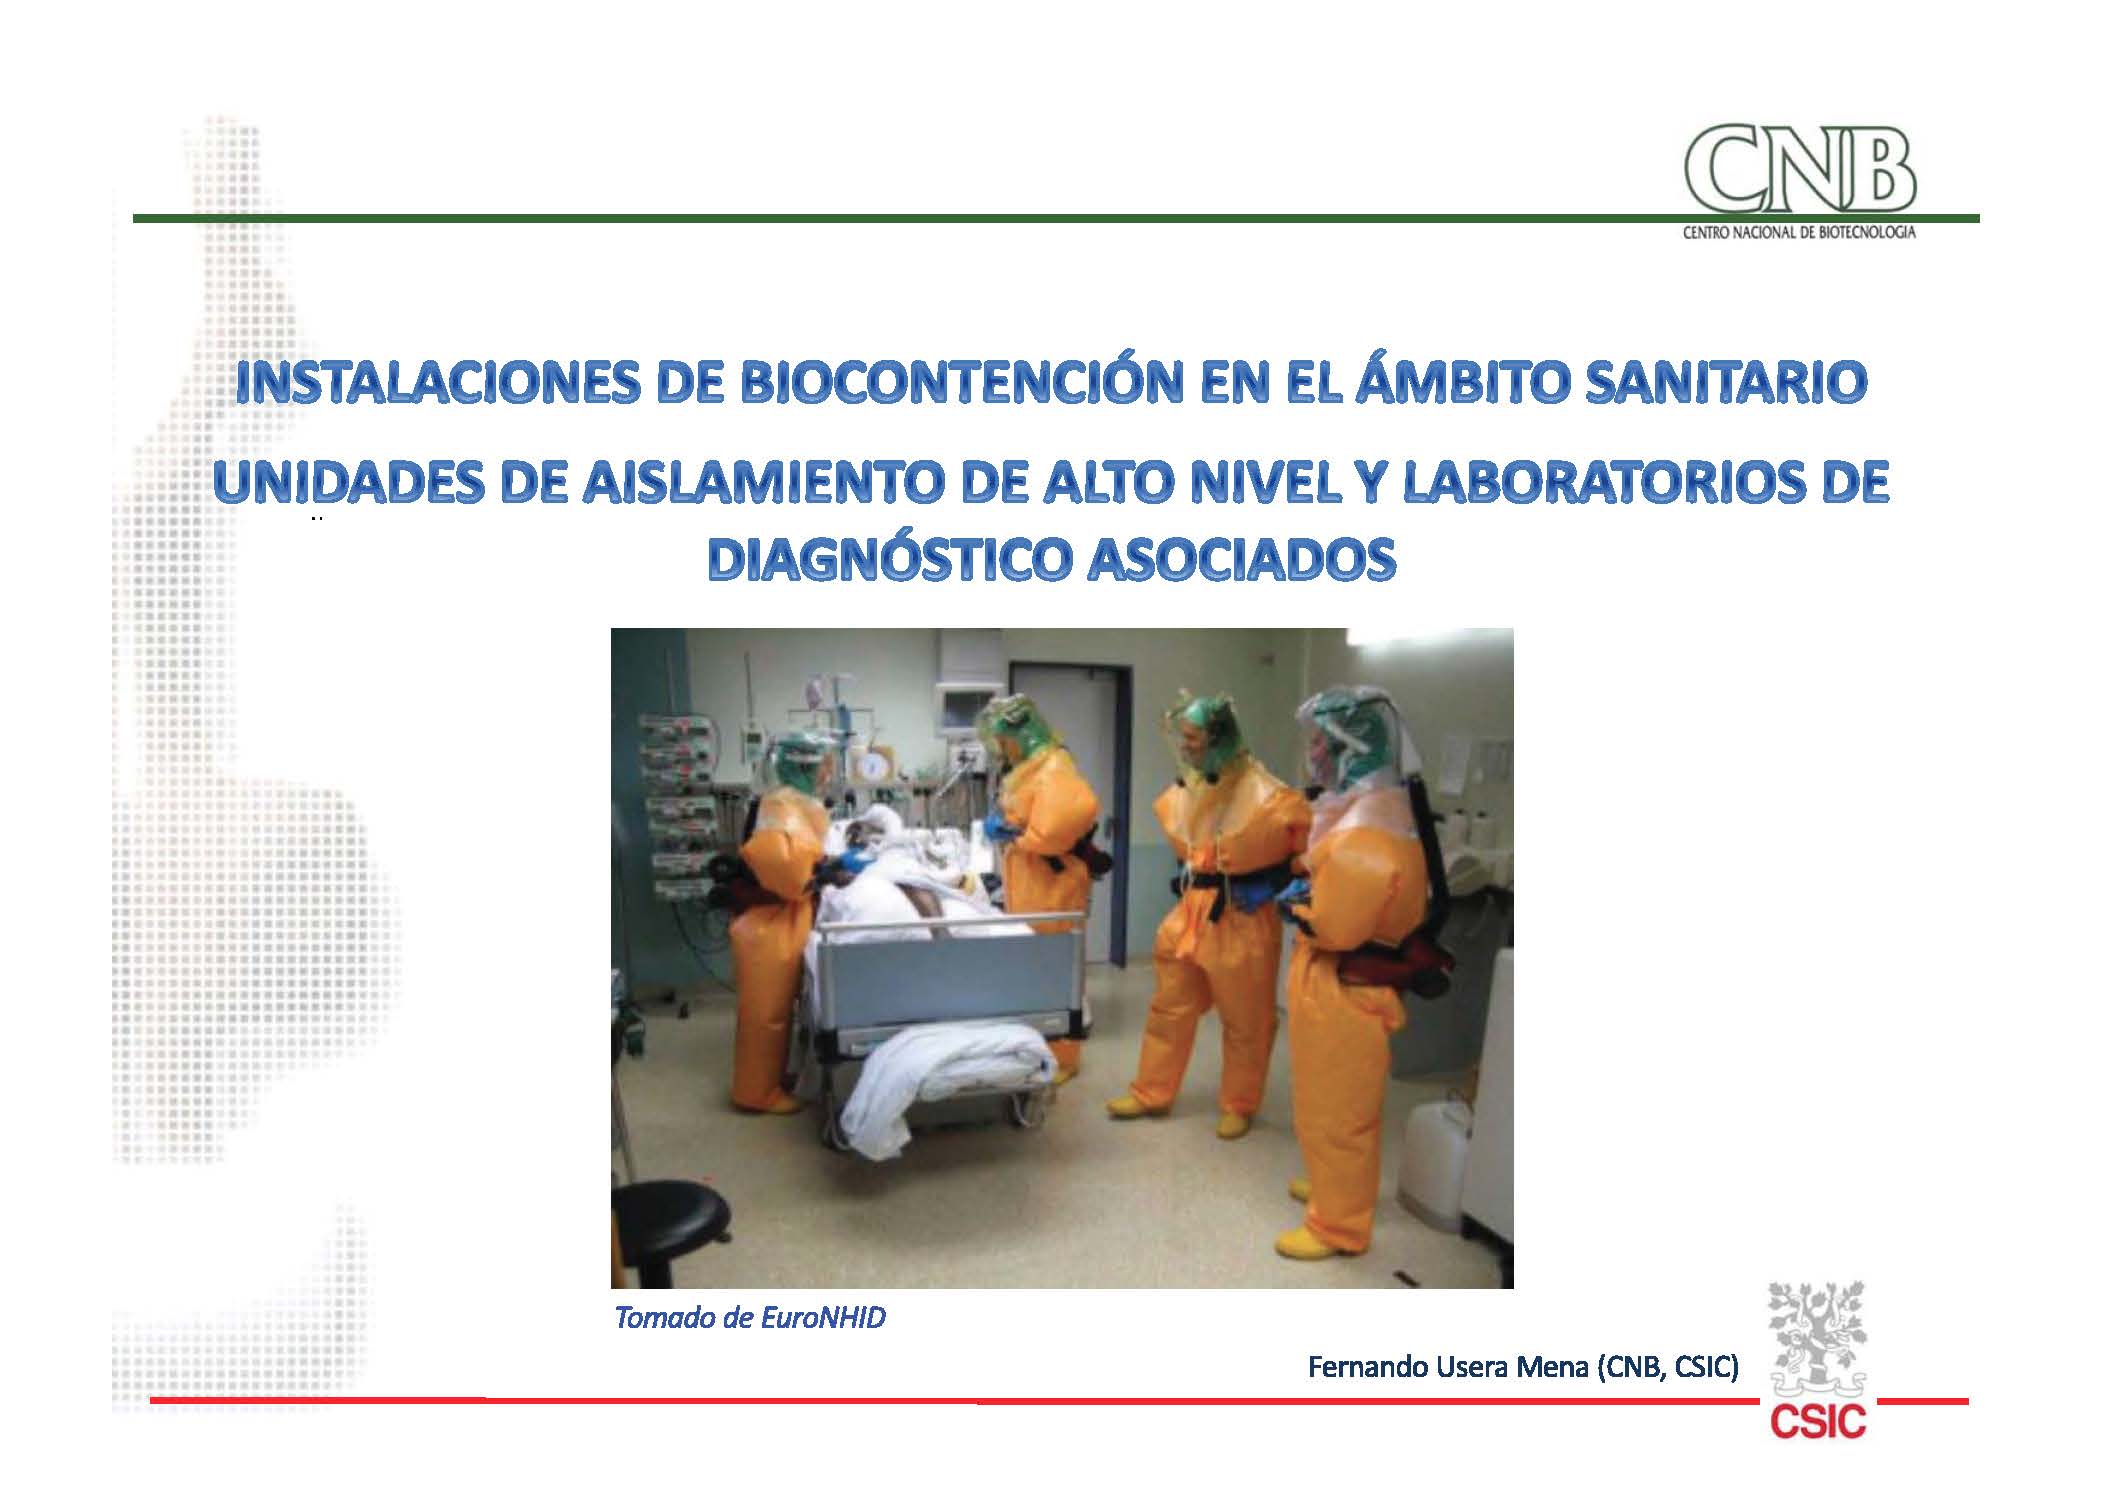 //aebios.org/wp-content/uploads/2020/08/Portada-Contencion-UAA-Hospitales-Fernando-Usera.jpg